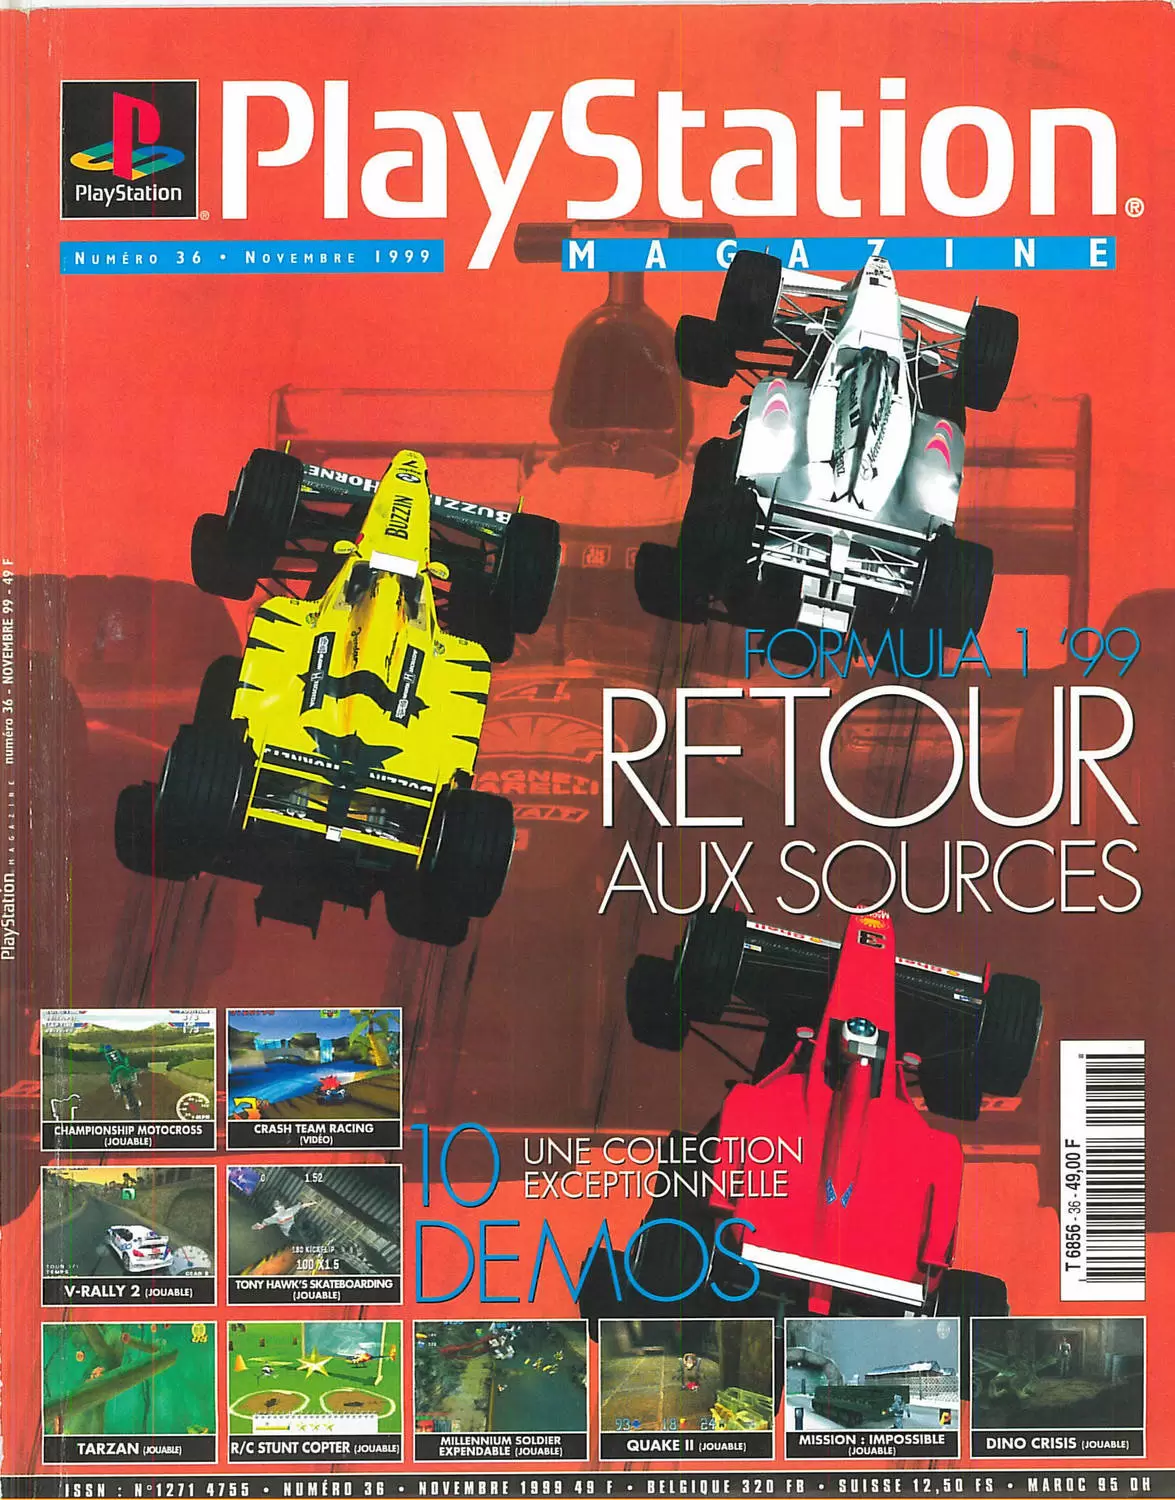 Playstation Magazine - Playstation Magazine #36